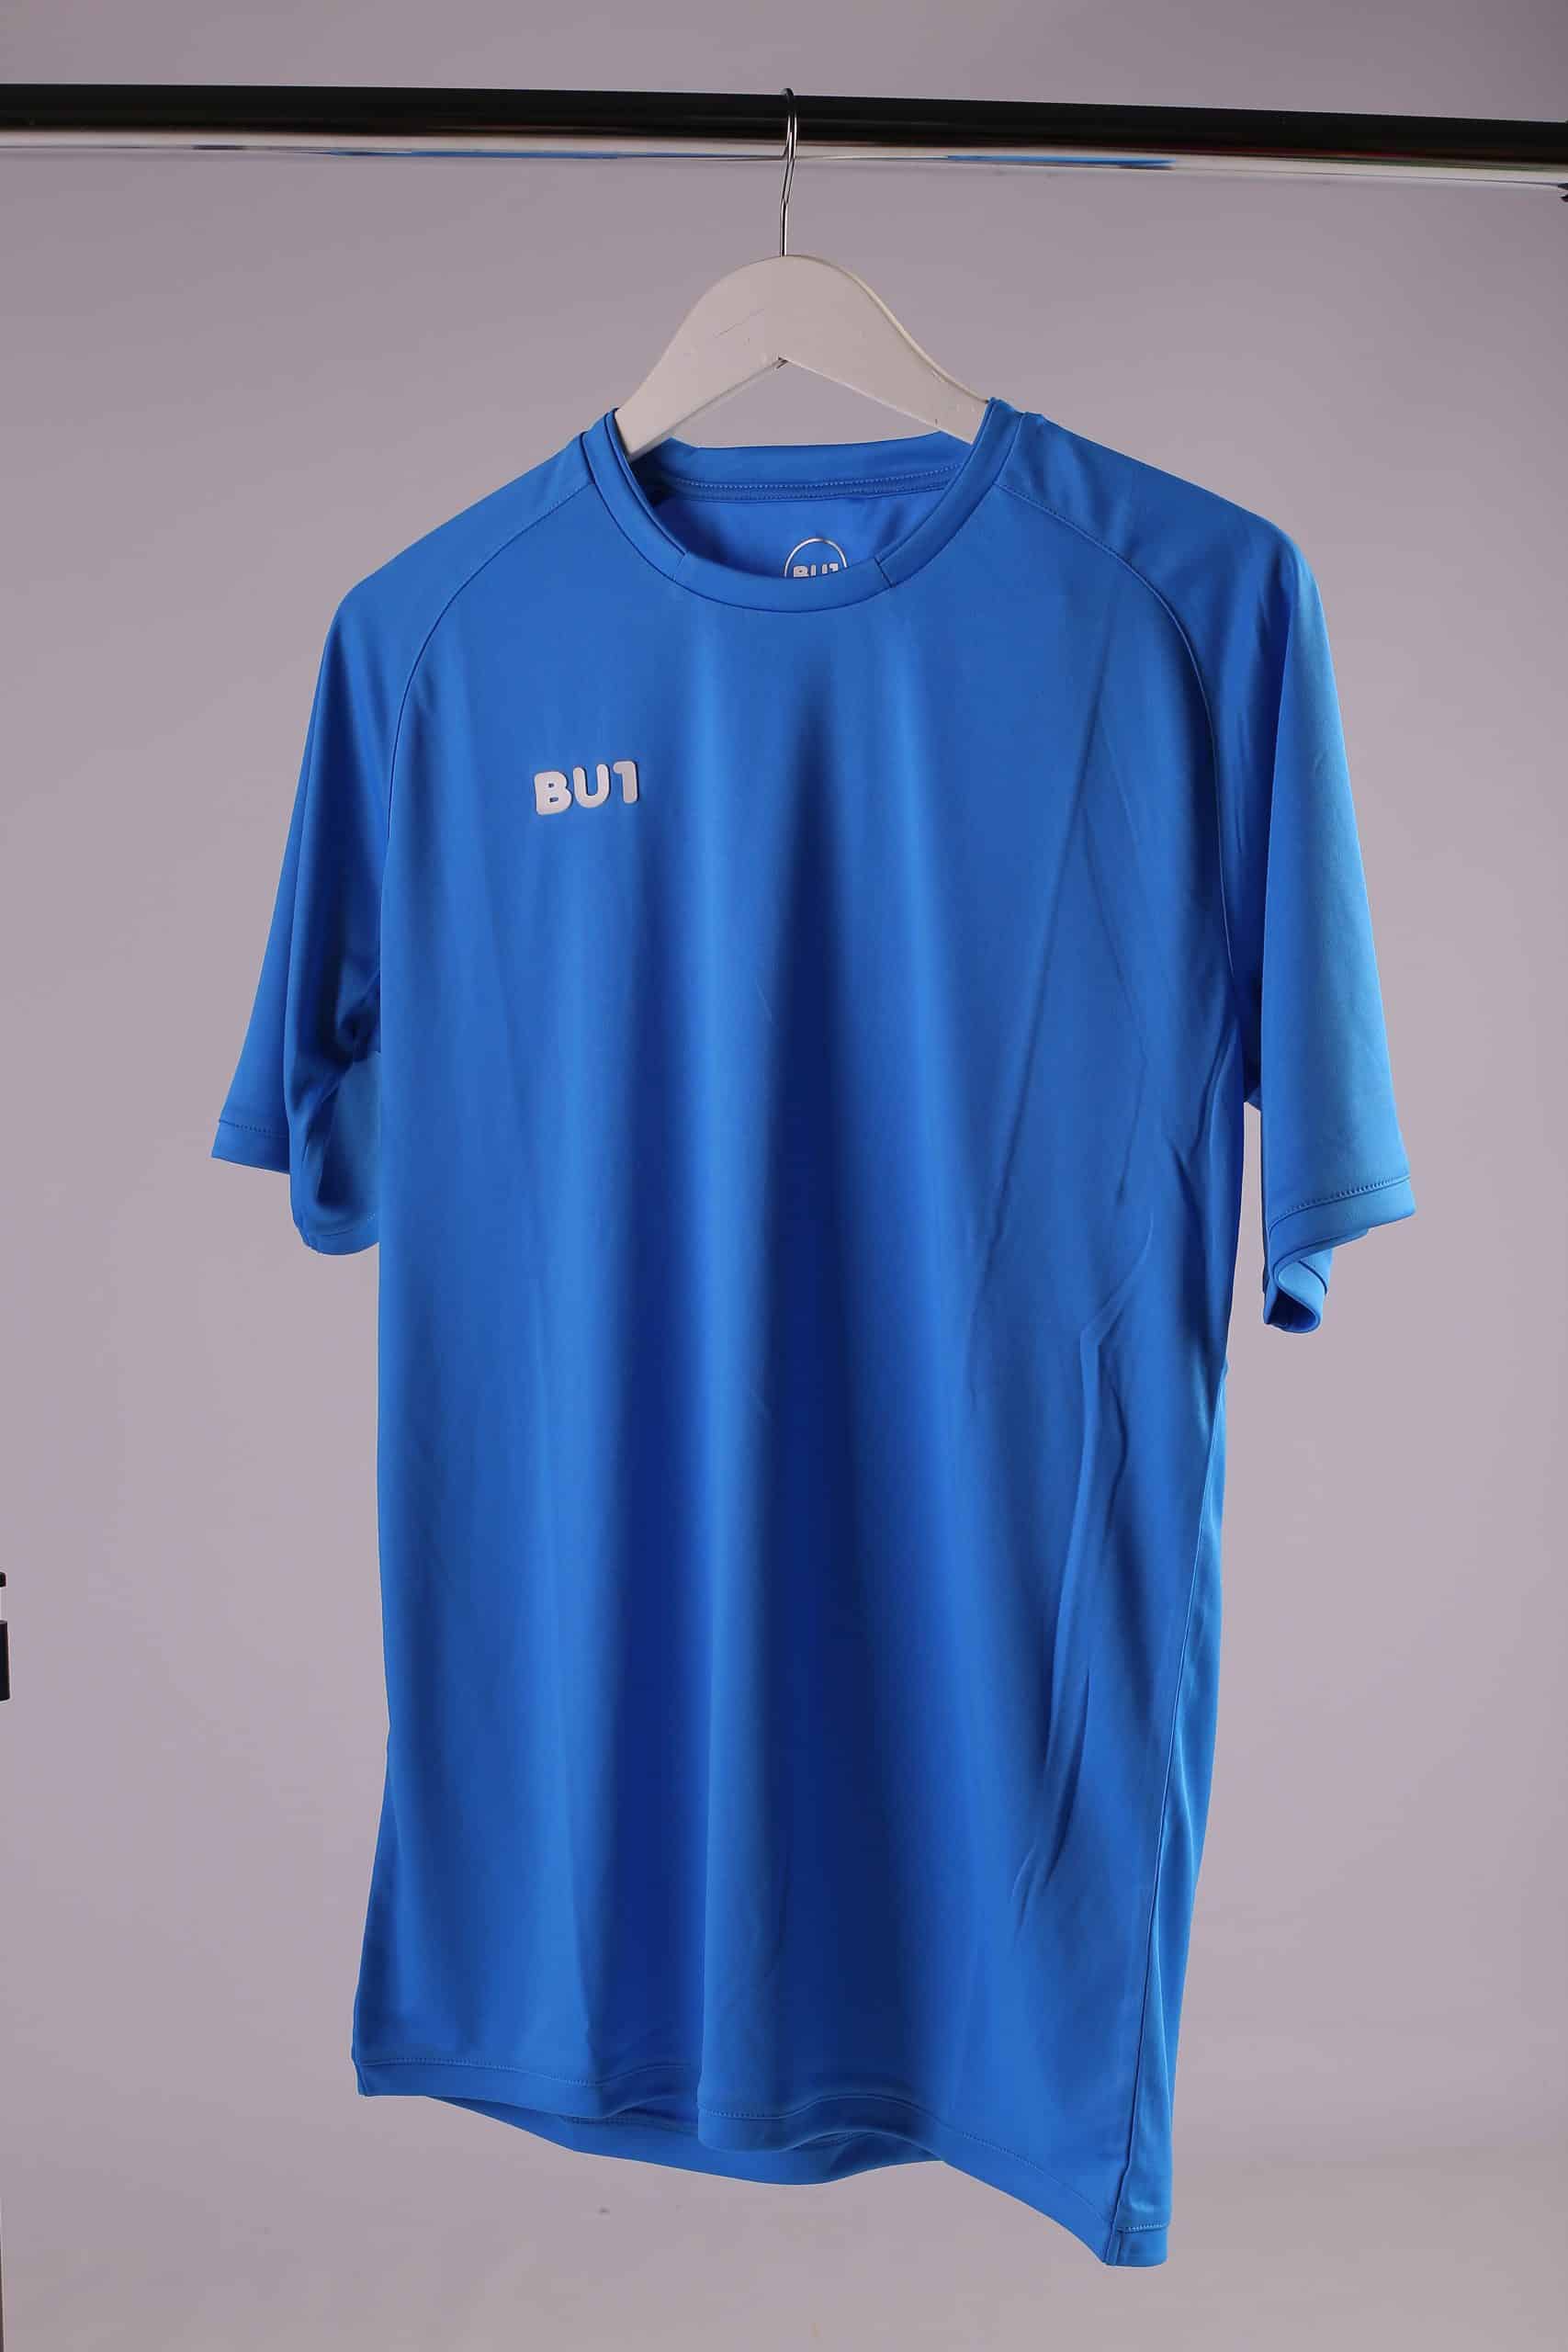 Koszulka BU1 20 niebieska